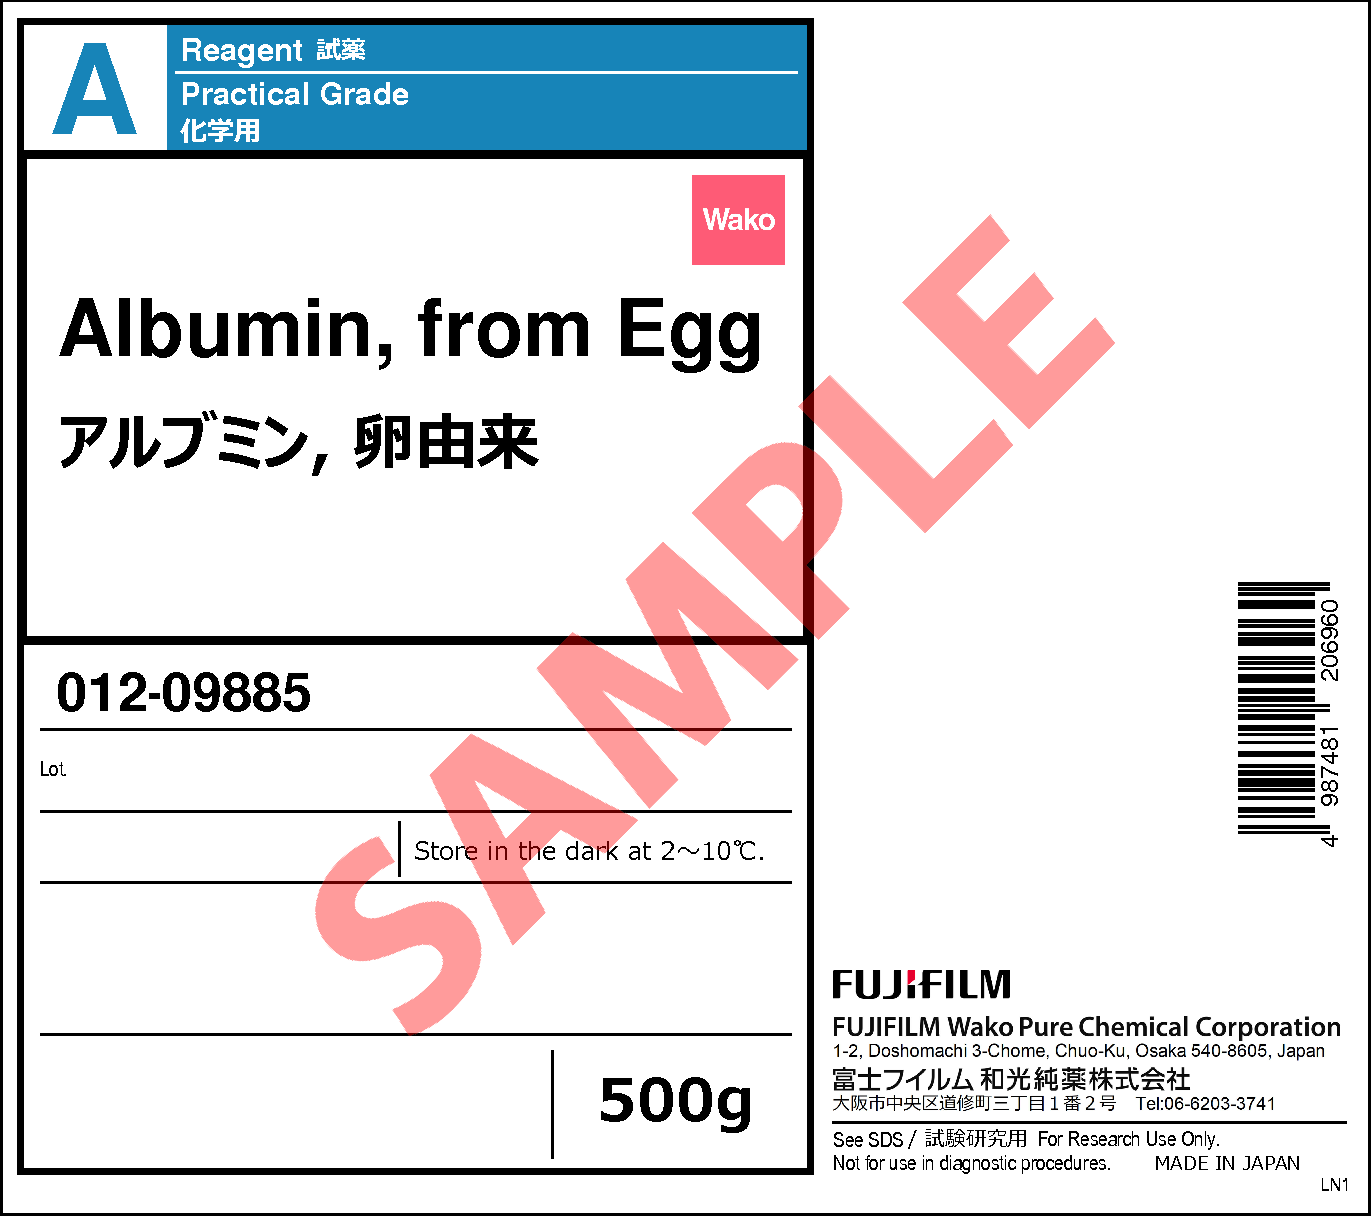 9006 59 1 アルブミン 卵由来 Albumin From Egg 018 09882 012